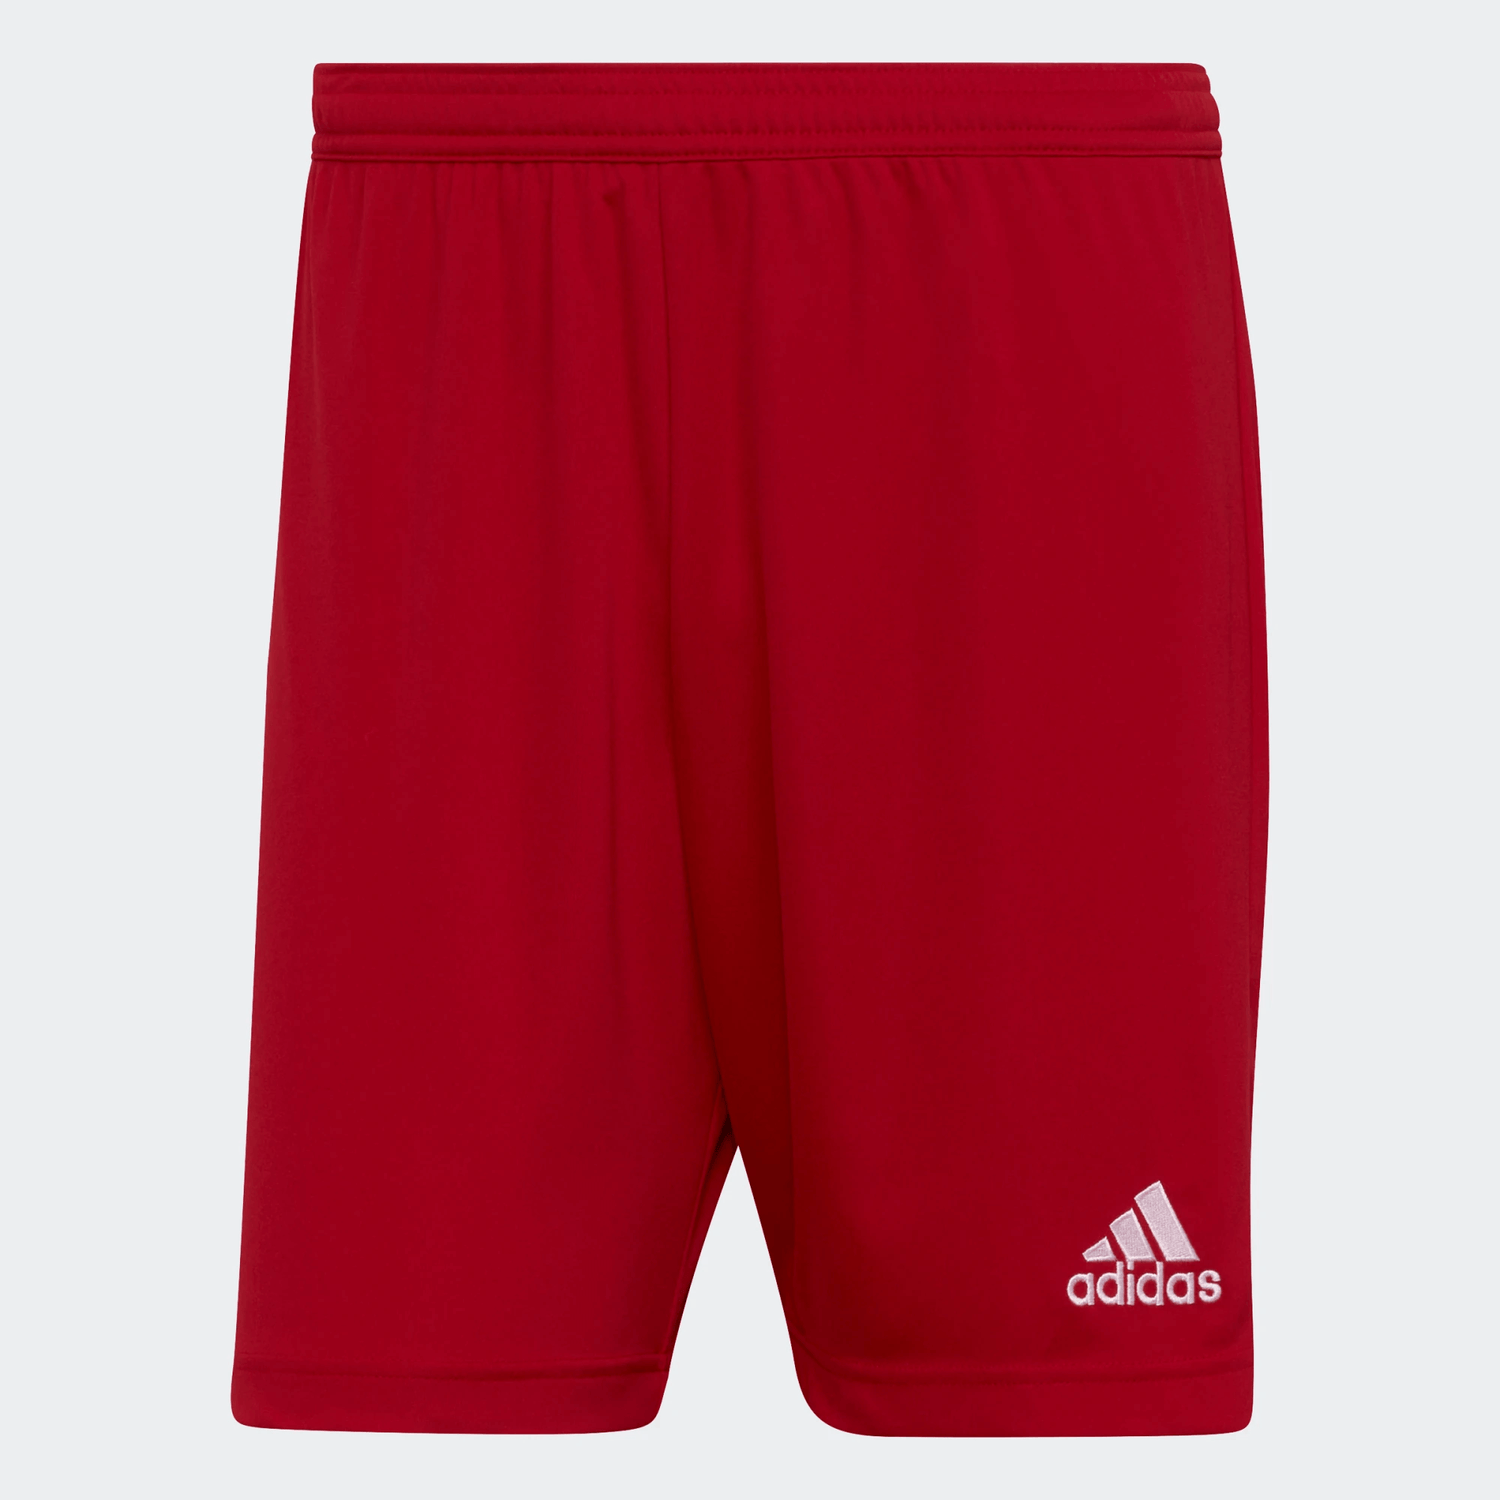 Adidas Entrada 22 Shorts Red (Front)